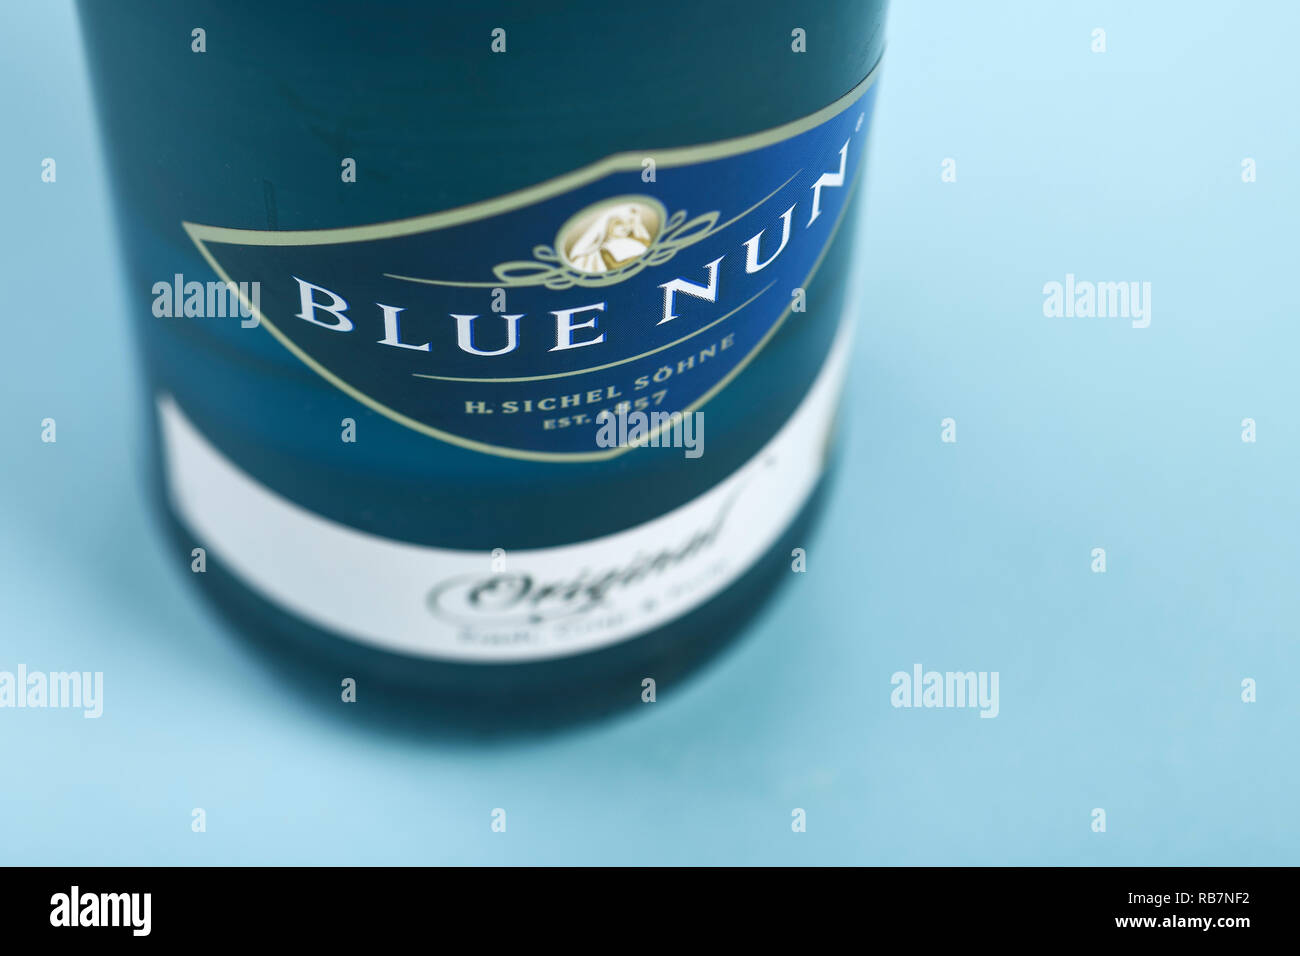 Près de l'étiquette d'une bouteille de moderne Blue Nun vin blanc dans une bouteille de verre bleu Banque D'Images